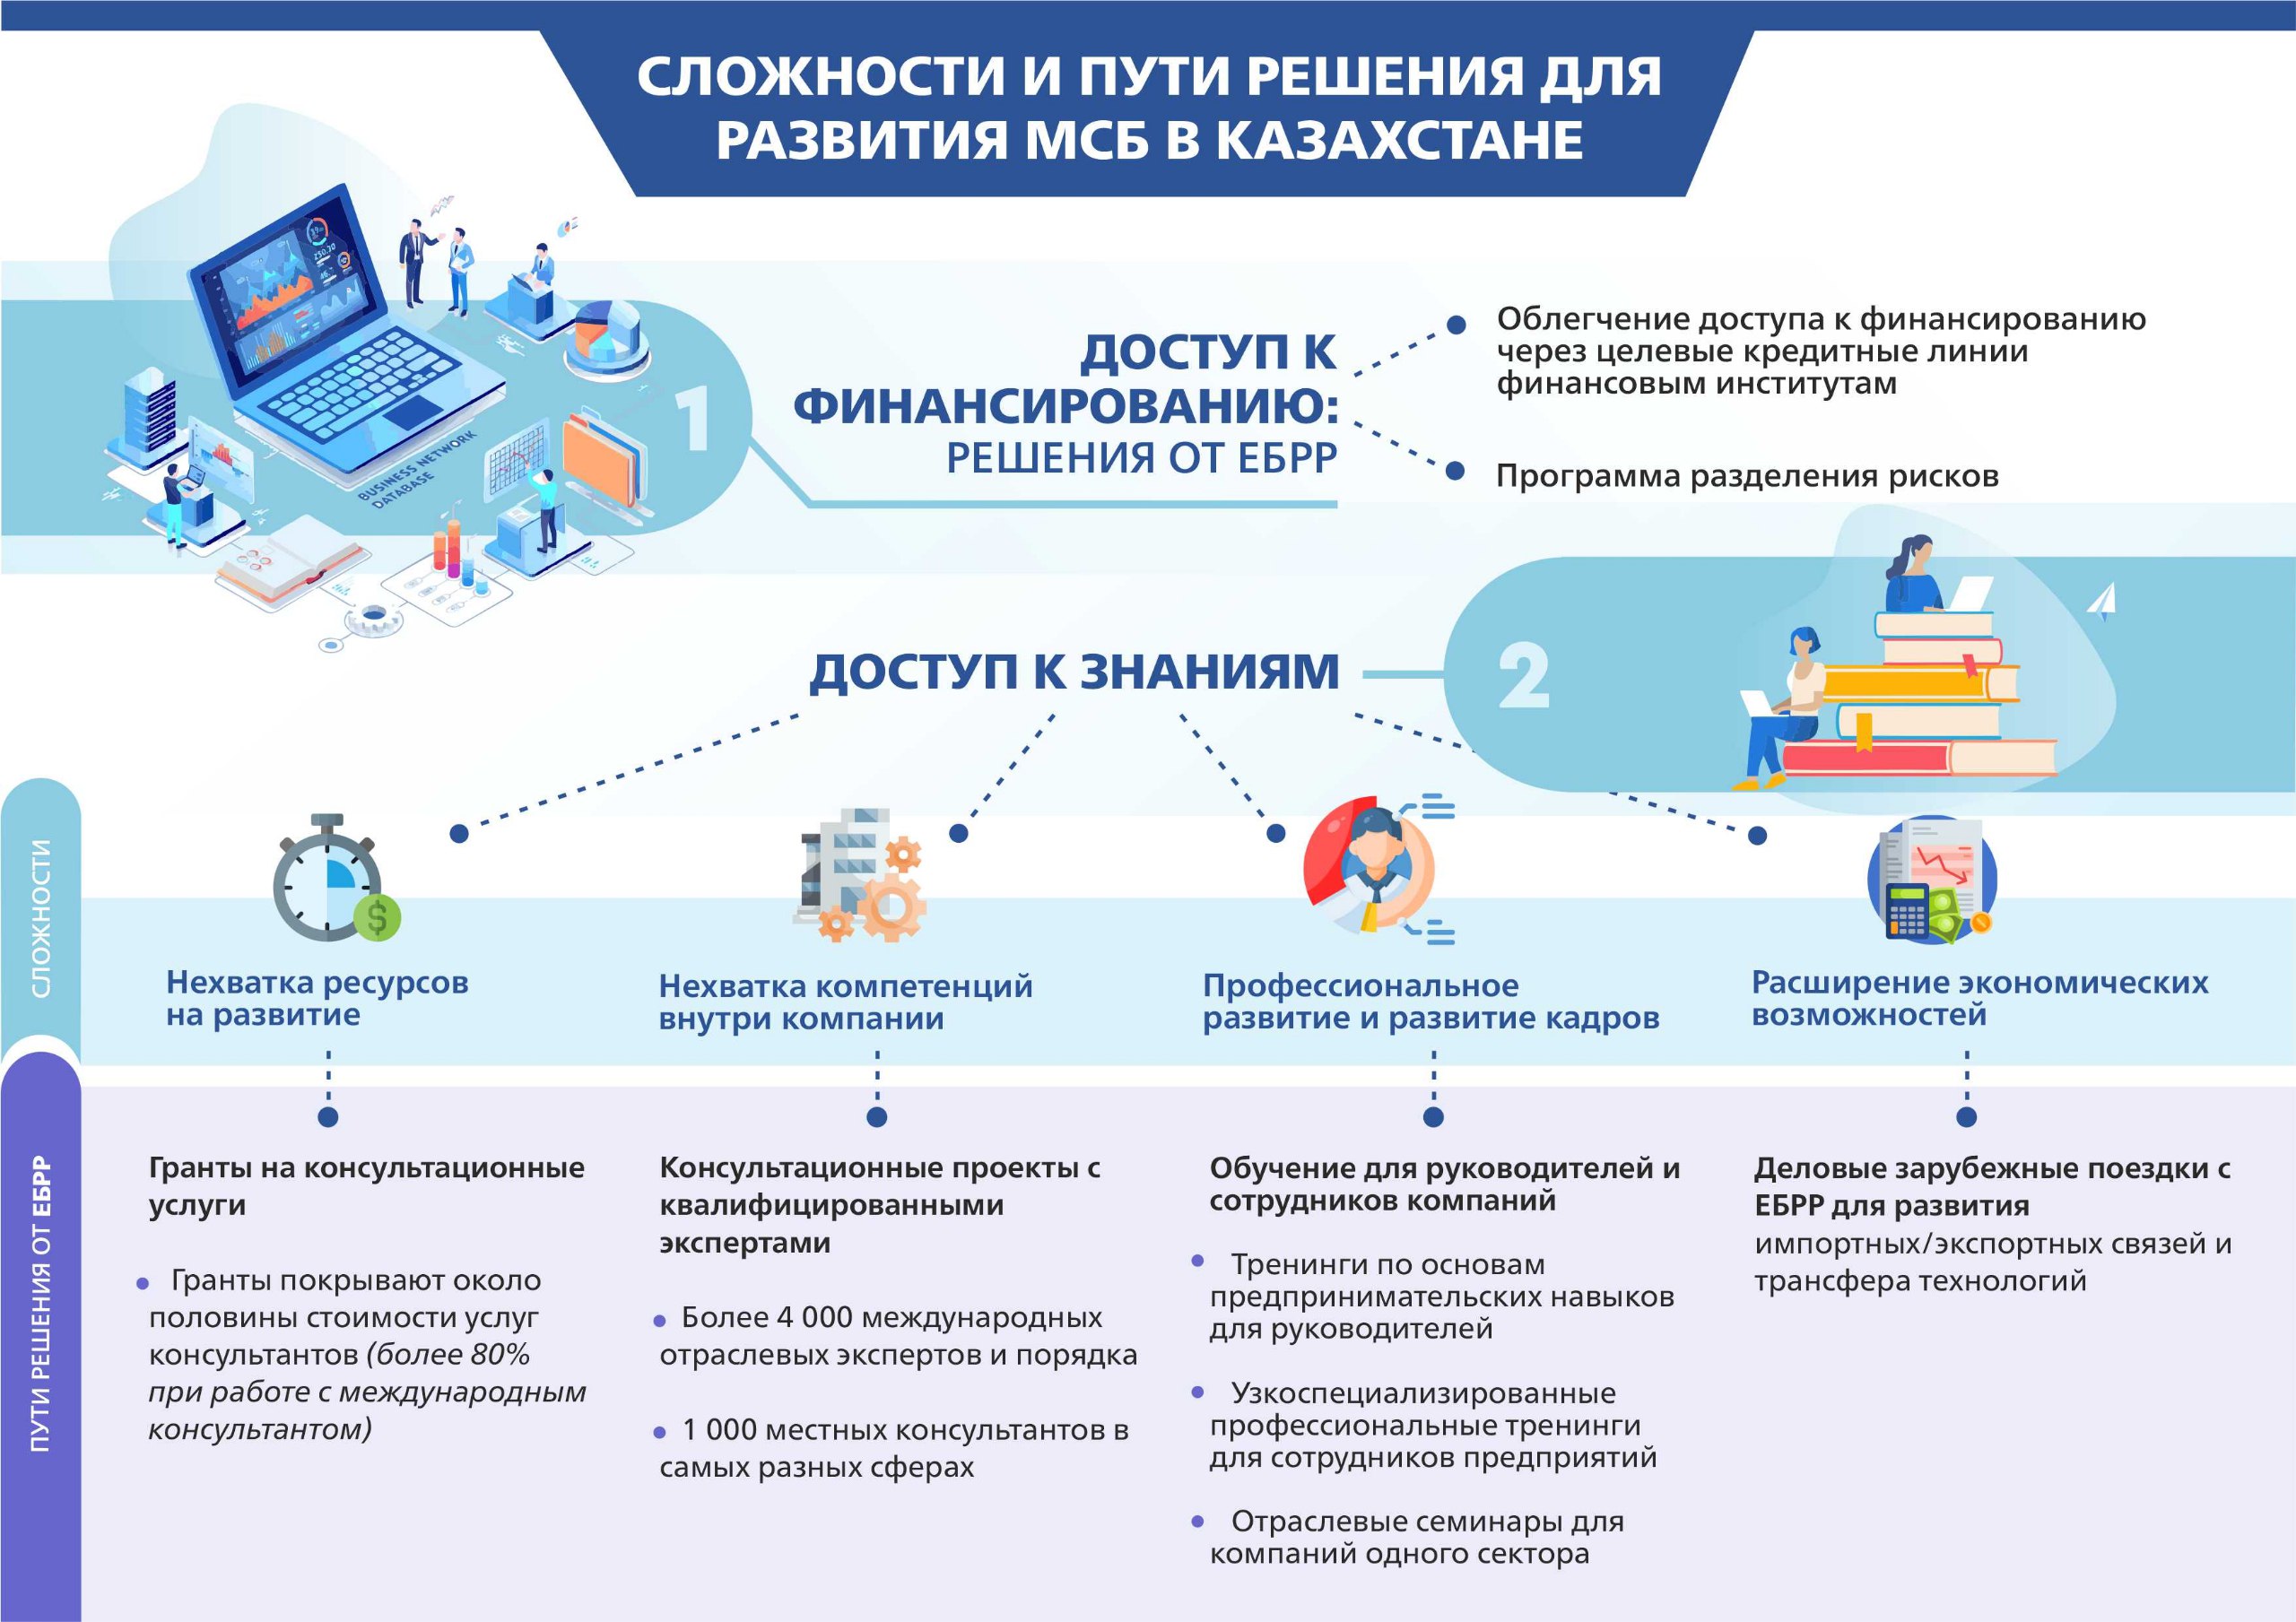 Сложности и пути решения для развития МСБ в Казахстане